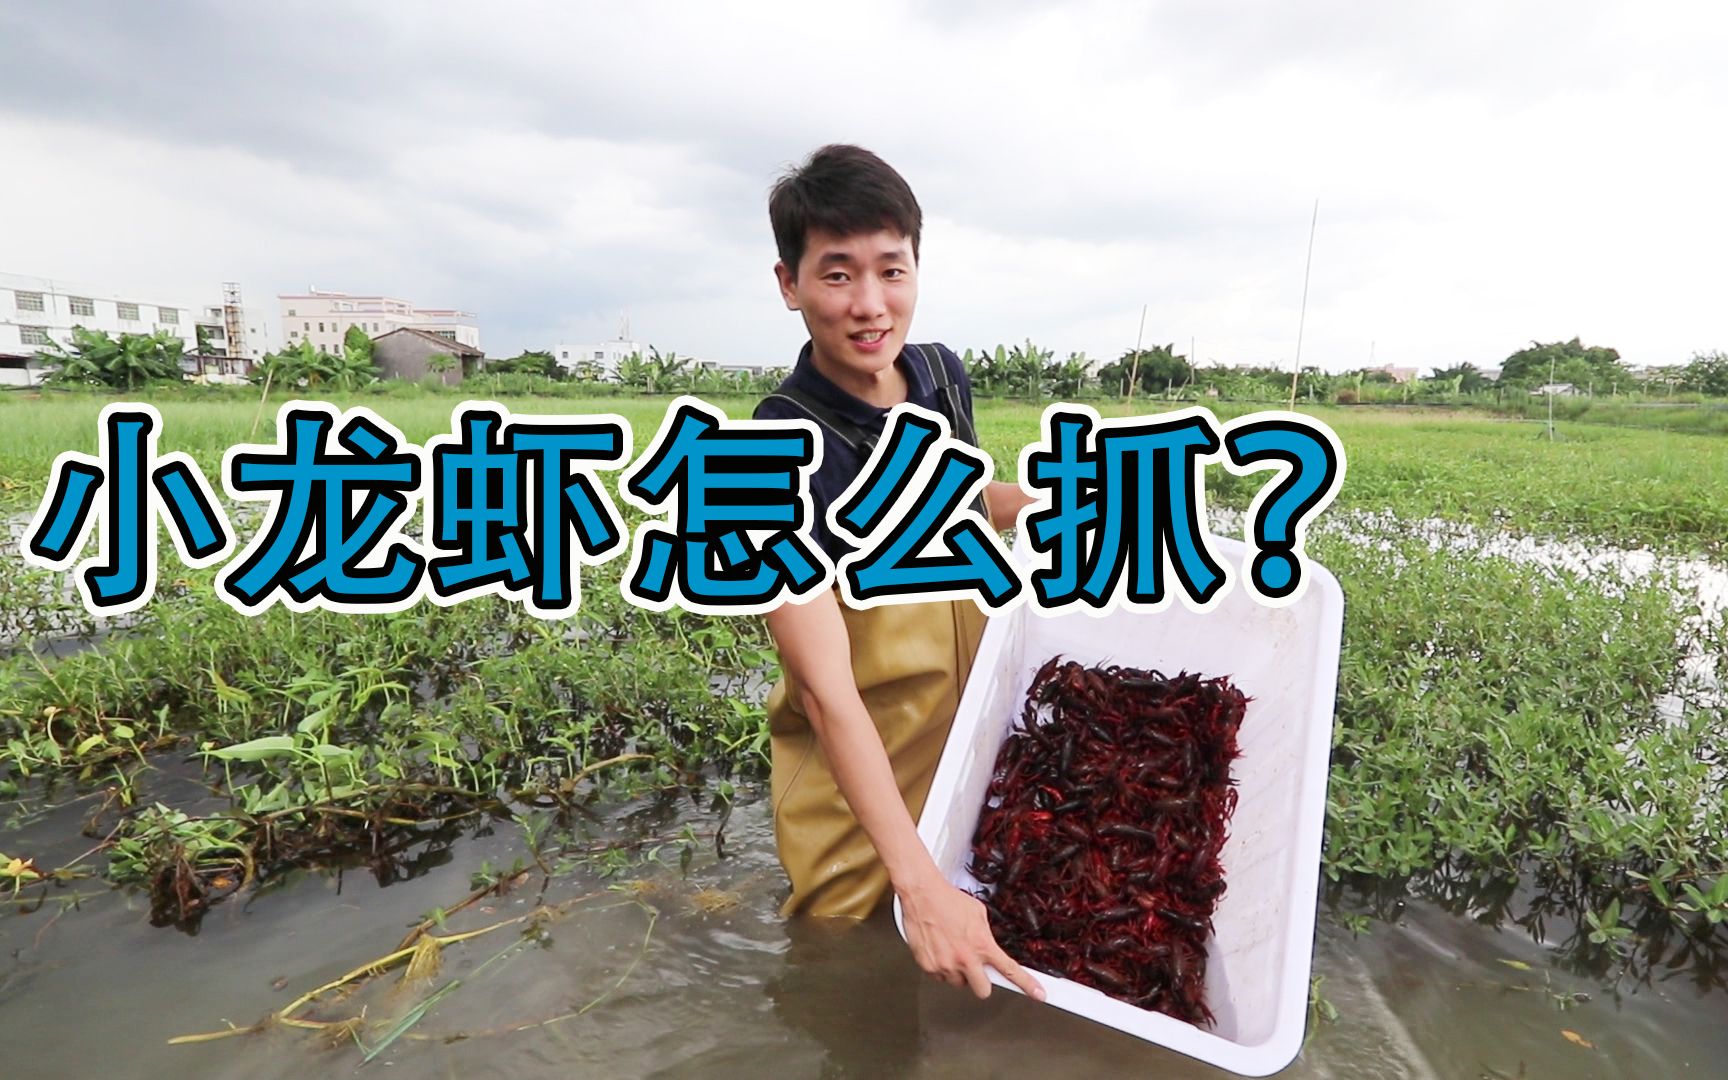 经常吃小龙虾，那你知道它们是怎么养殖的吗？养殖场用什么喂食呢